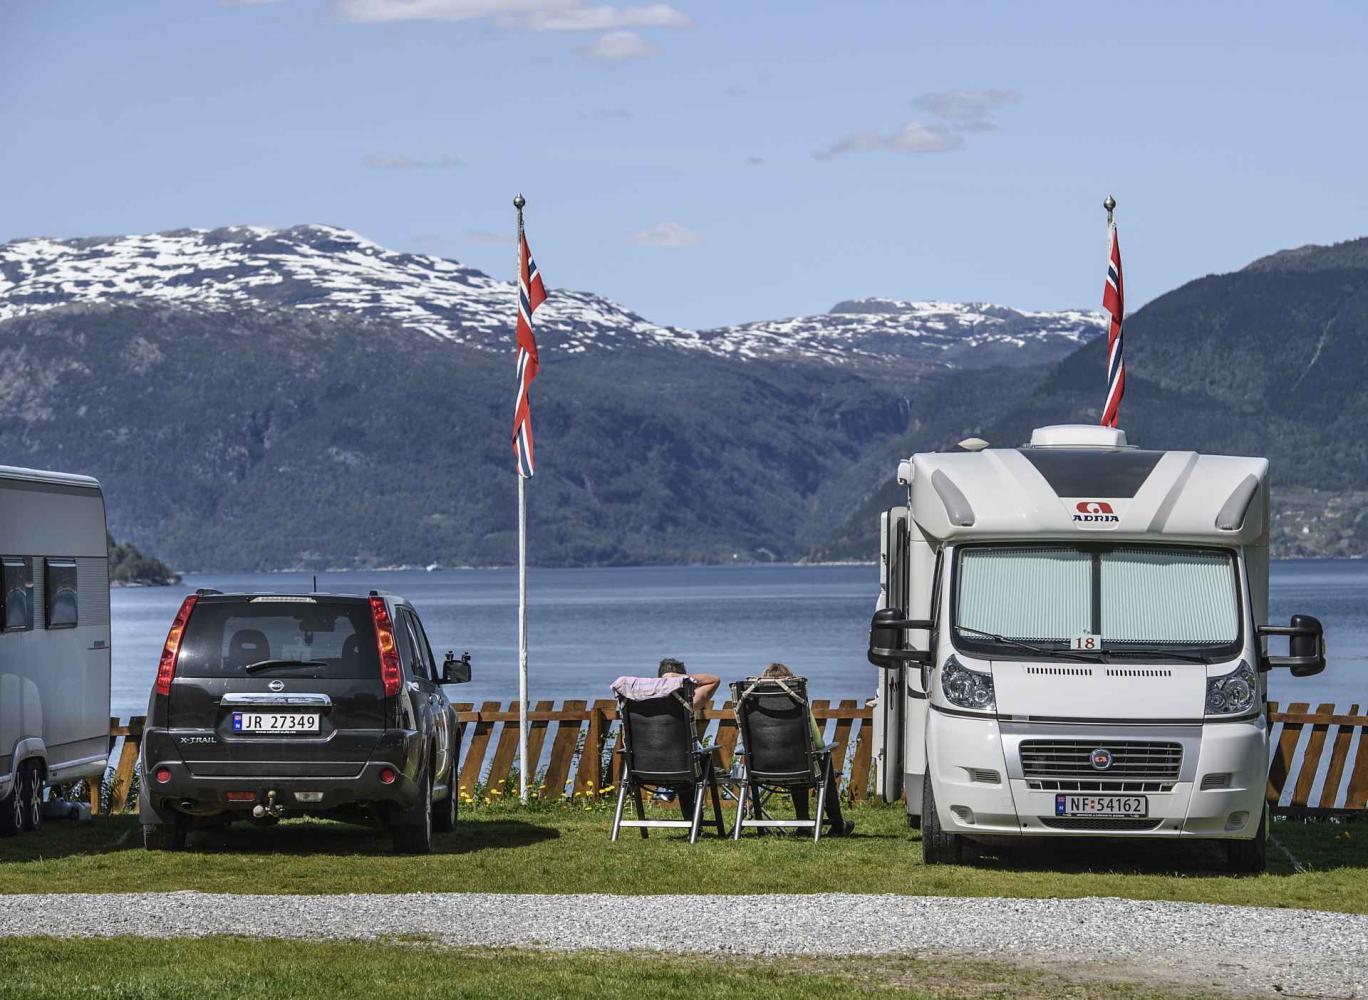 Caravanplass Kinsarvik Camping